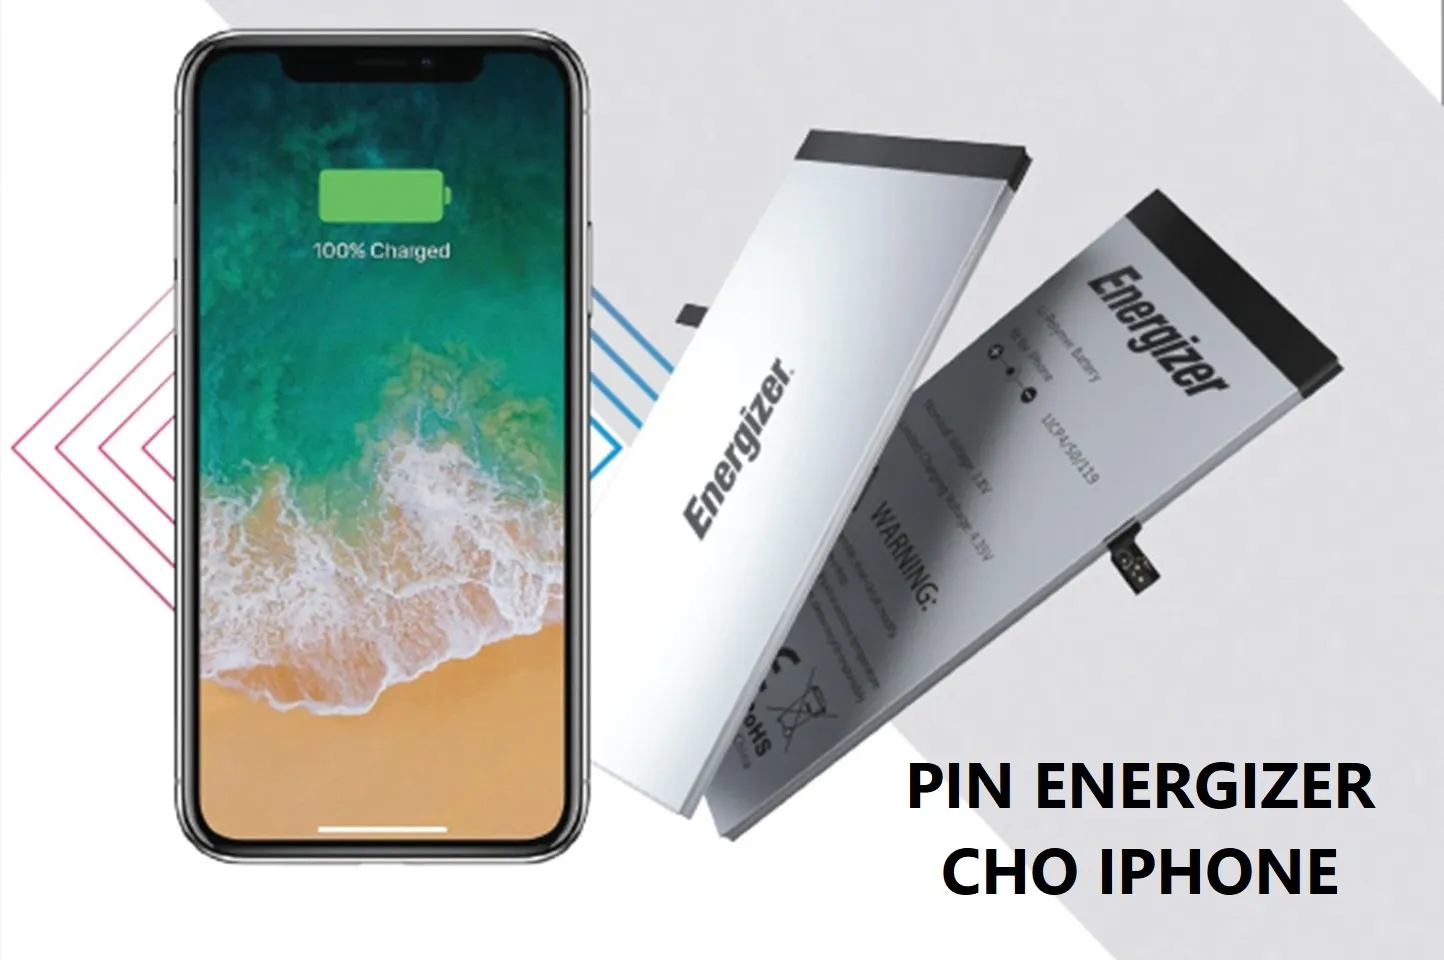 Pin Energizer iPhone có tốt không? Của nước nào [HỎI – ĐÁP]